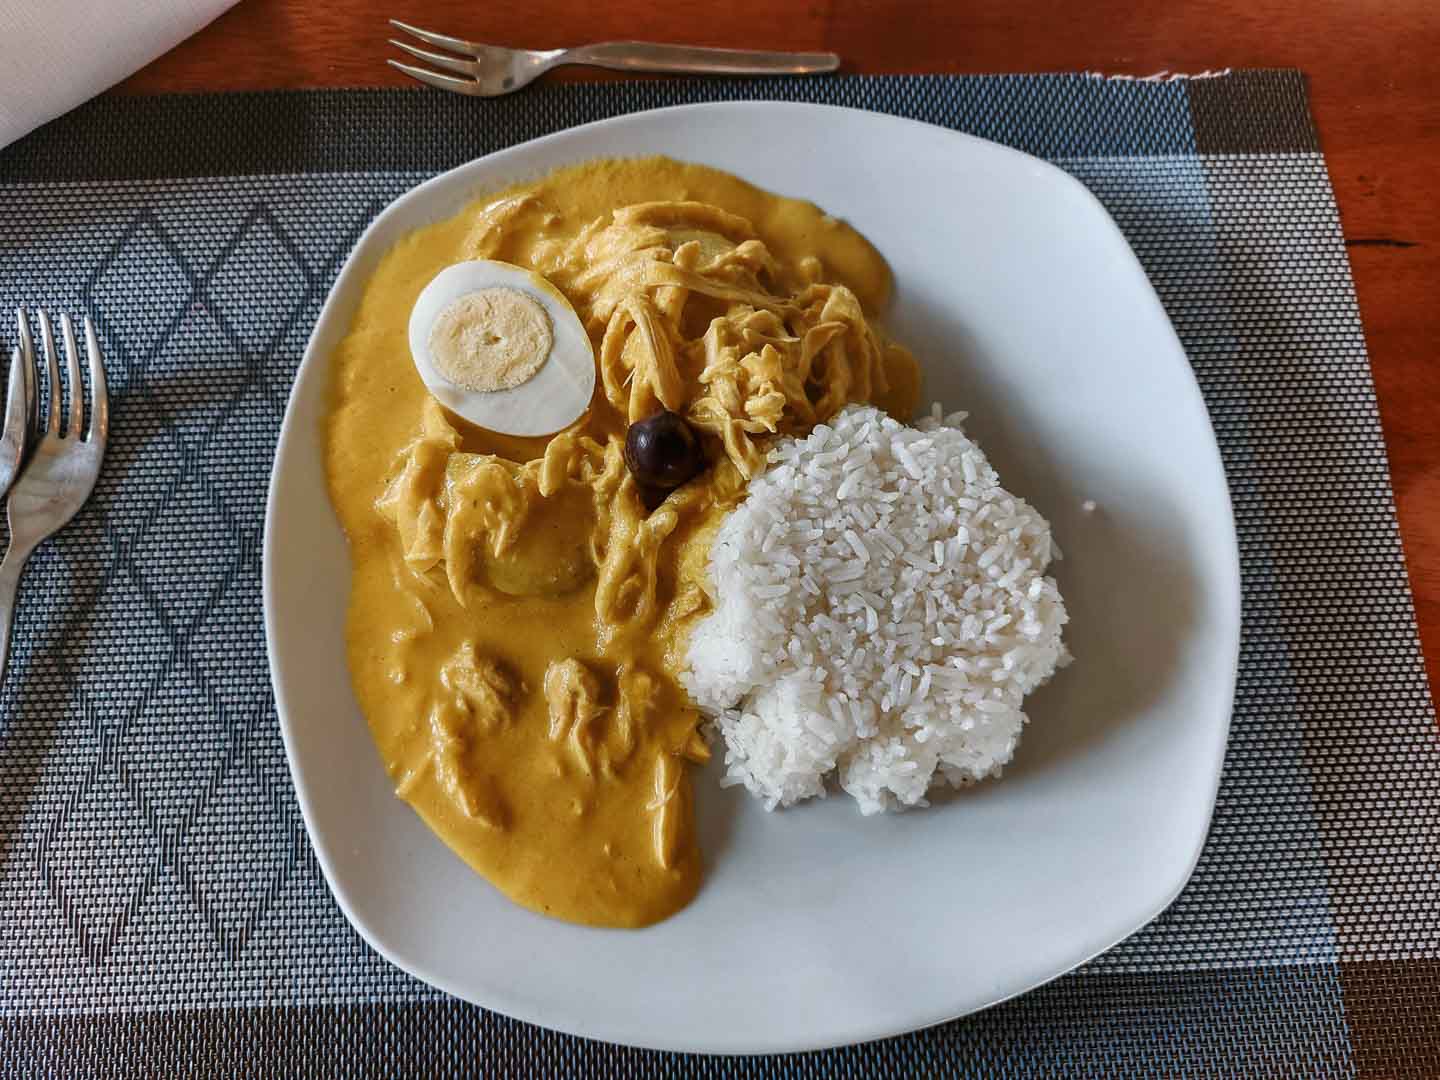 Aji de gallina, Peruvian dish